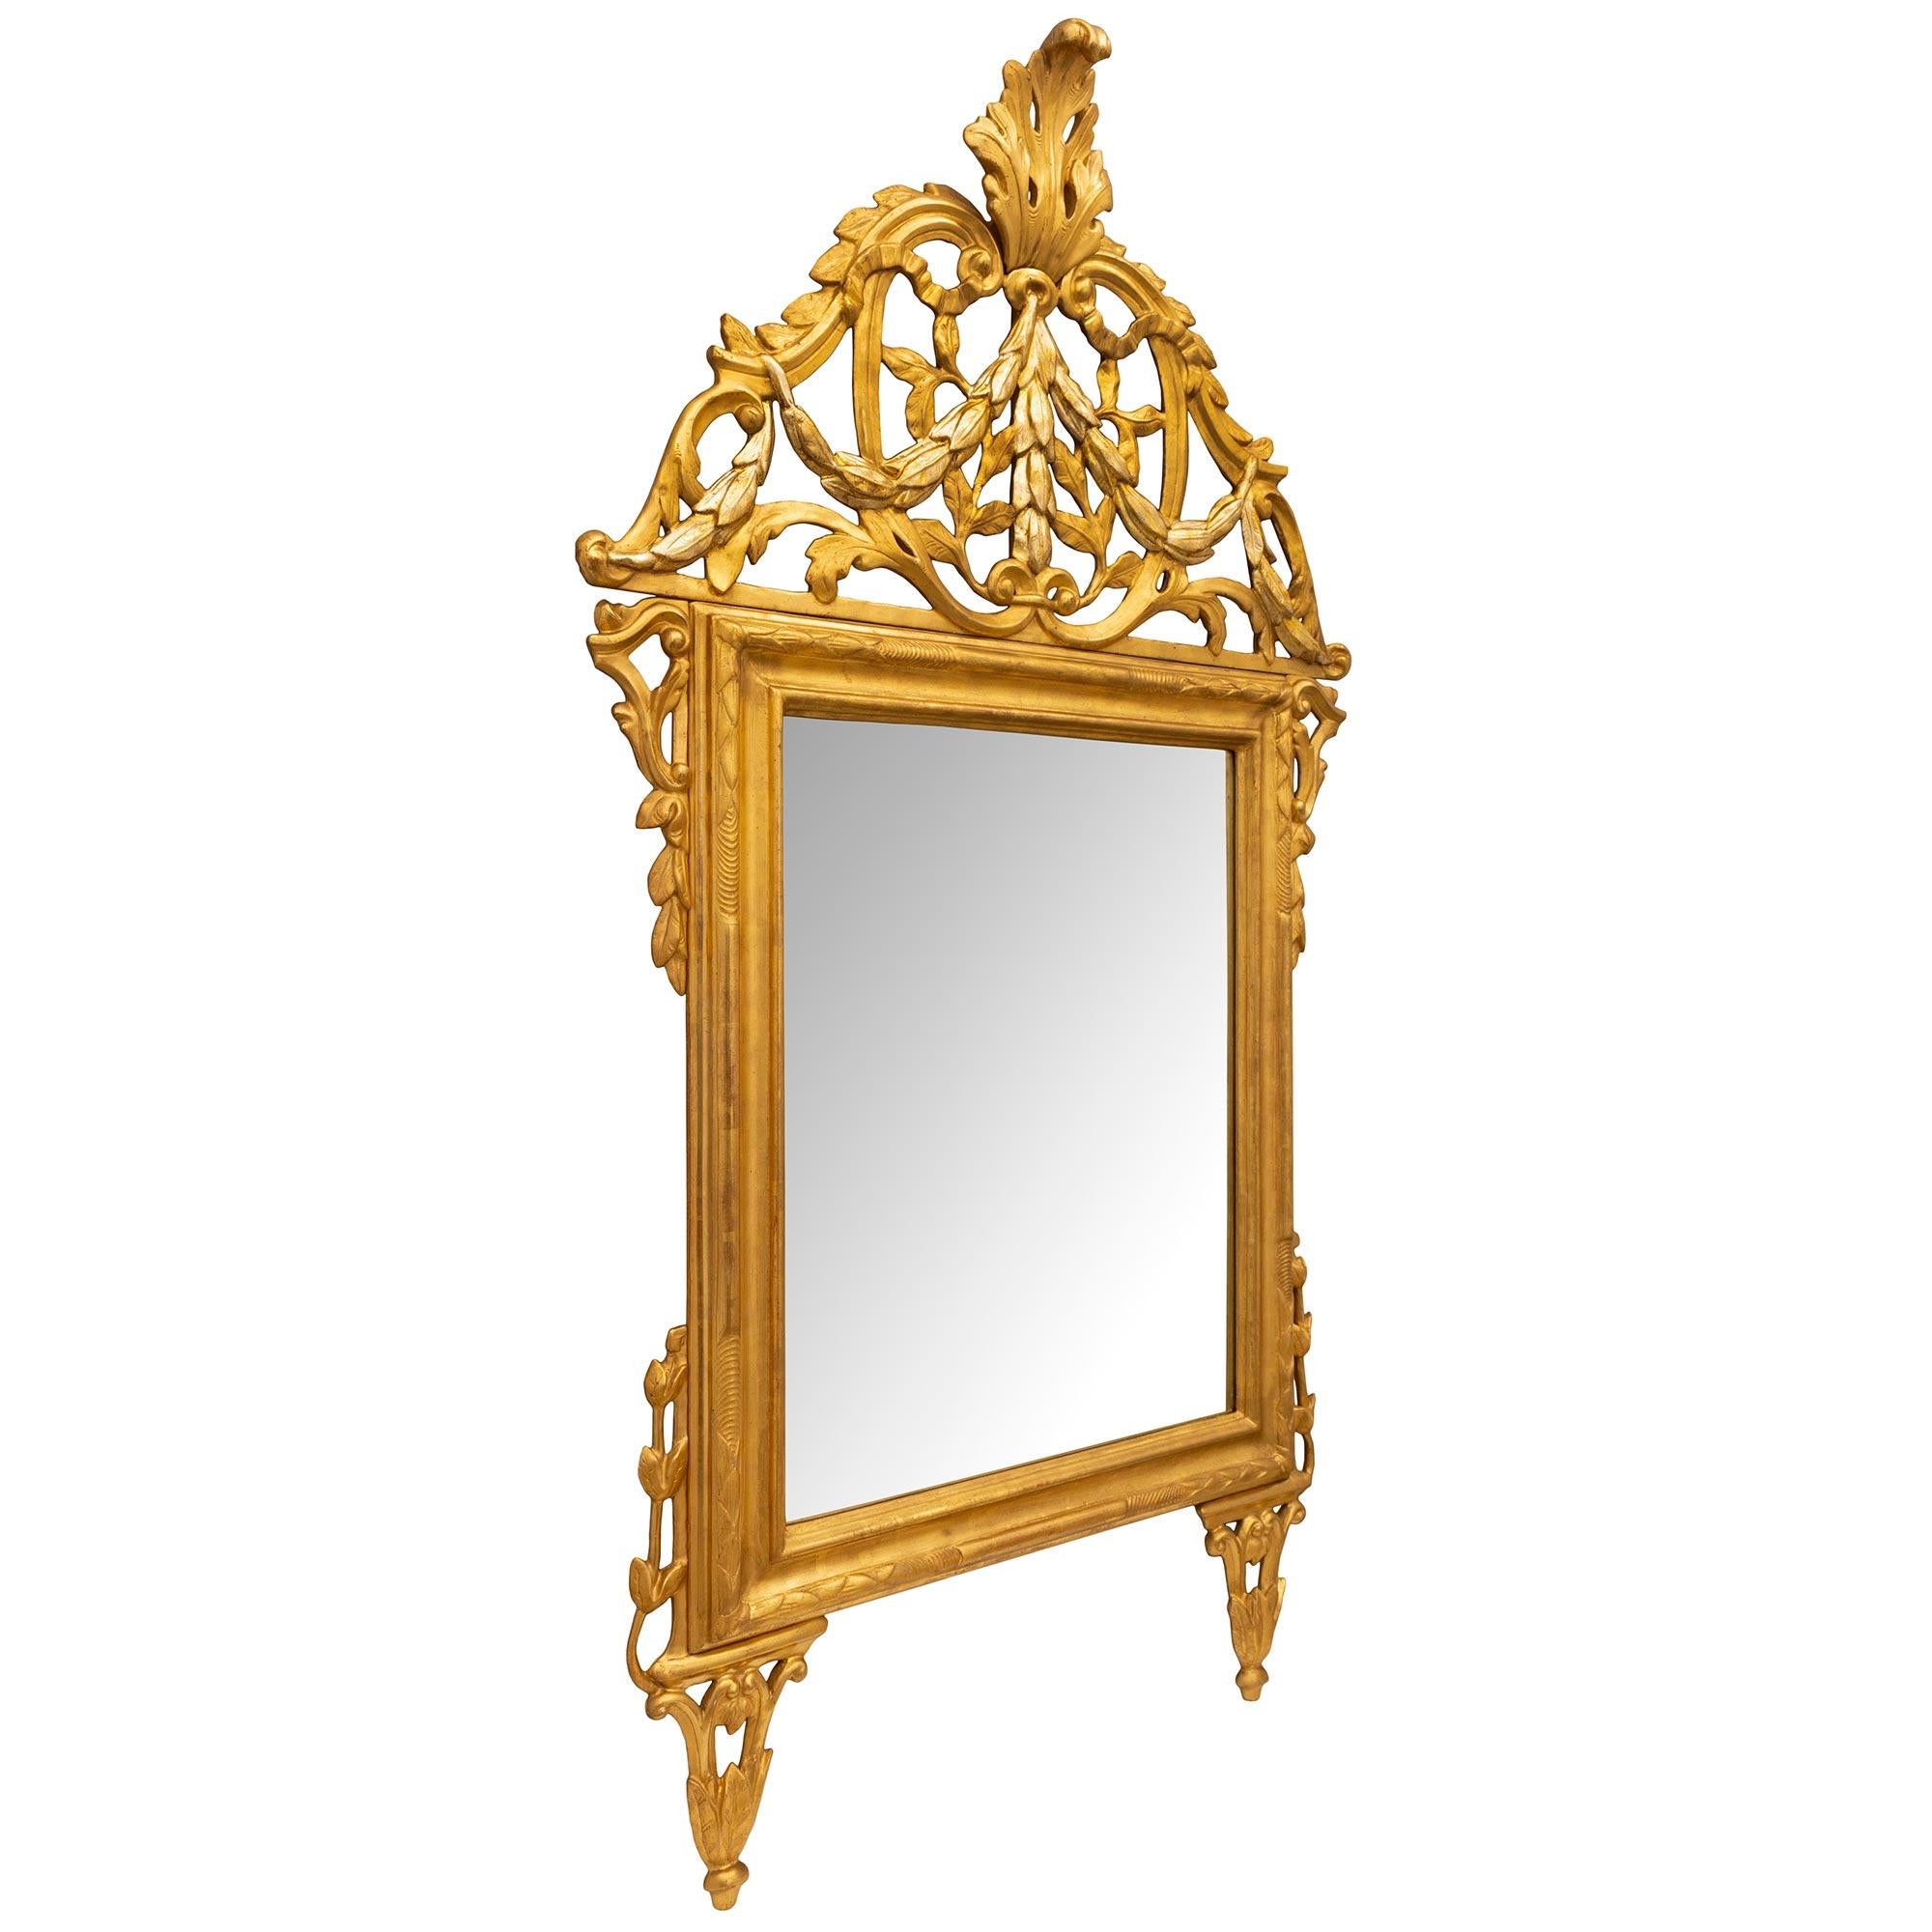 Magnifique miroir Mecca en bois doré et argenté d'époque Louis XIV, Italie, 18e siècle. Le miroir repose sur des pieds triangulaires effilés et ajourés, décorés de feuilles et de motifs en volutes. Au-dessus se trouve sa plaque de miroir d'origine,